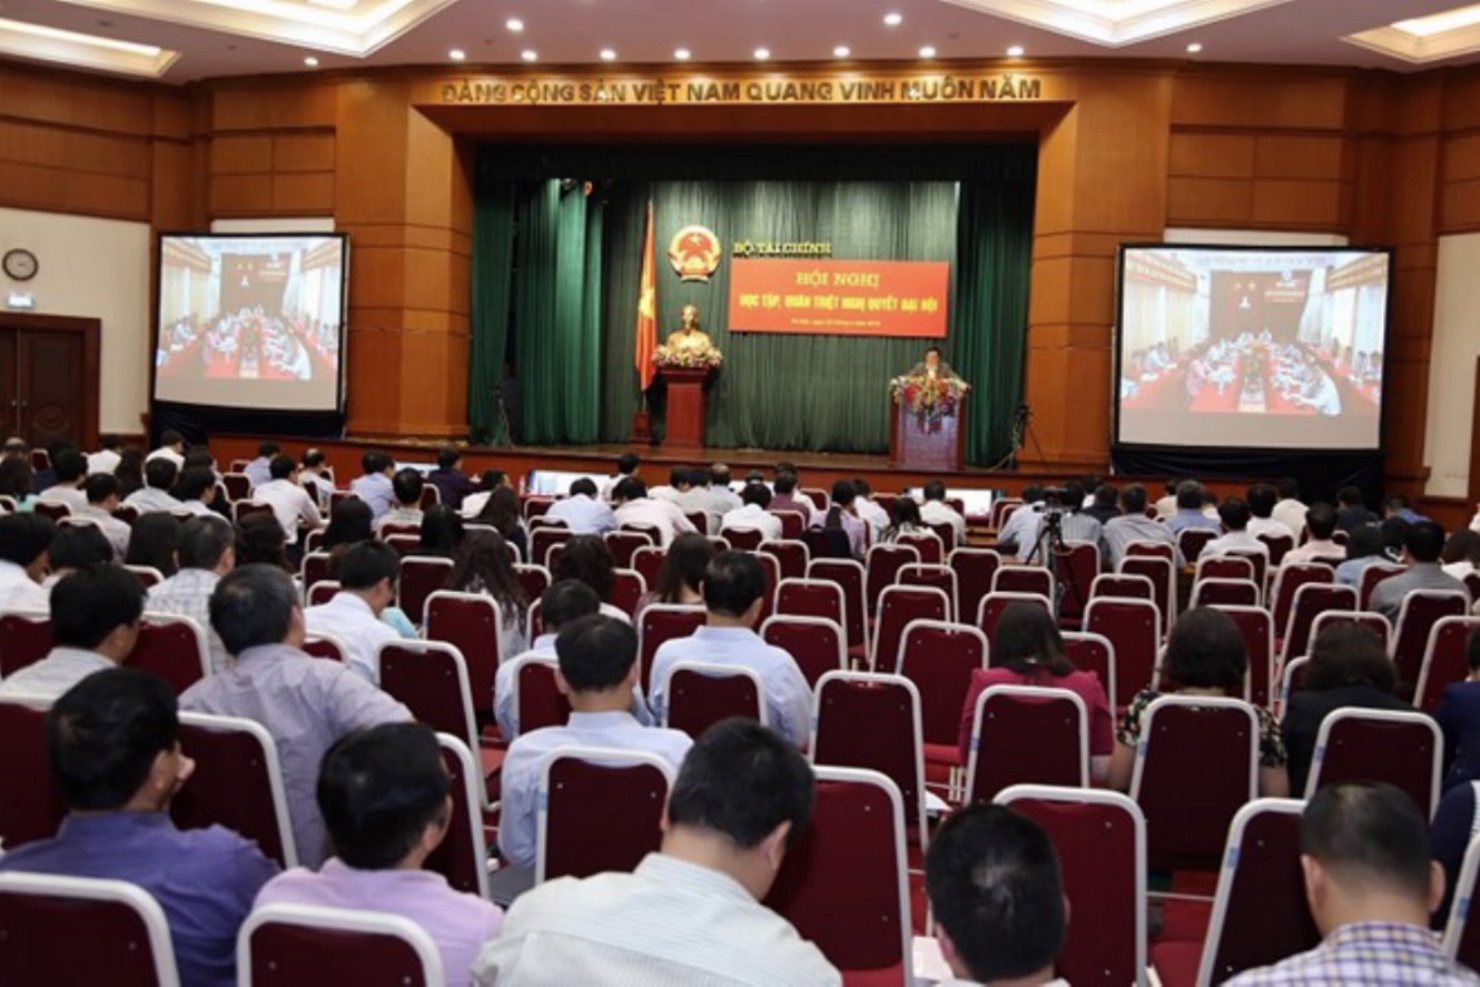 Đảng ủy Bộ Tài chính tổ chức Hội nghị học tập, quán triệt  Nghị quyết Đại hội XII của Đảng, ngày 22/4/2016.